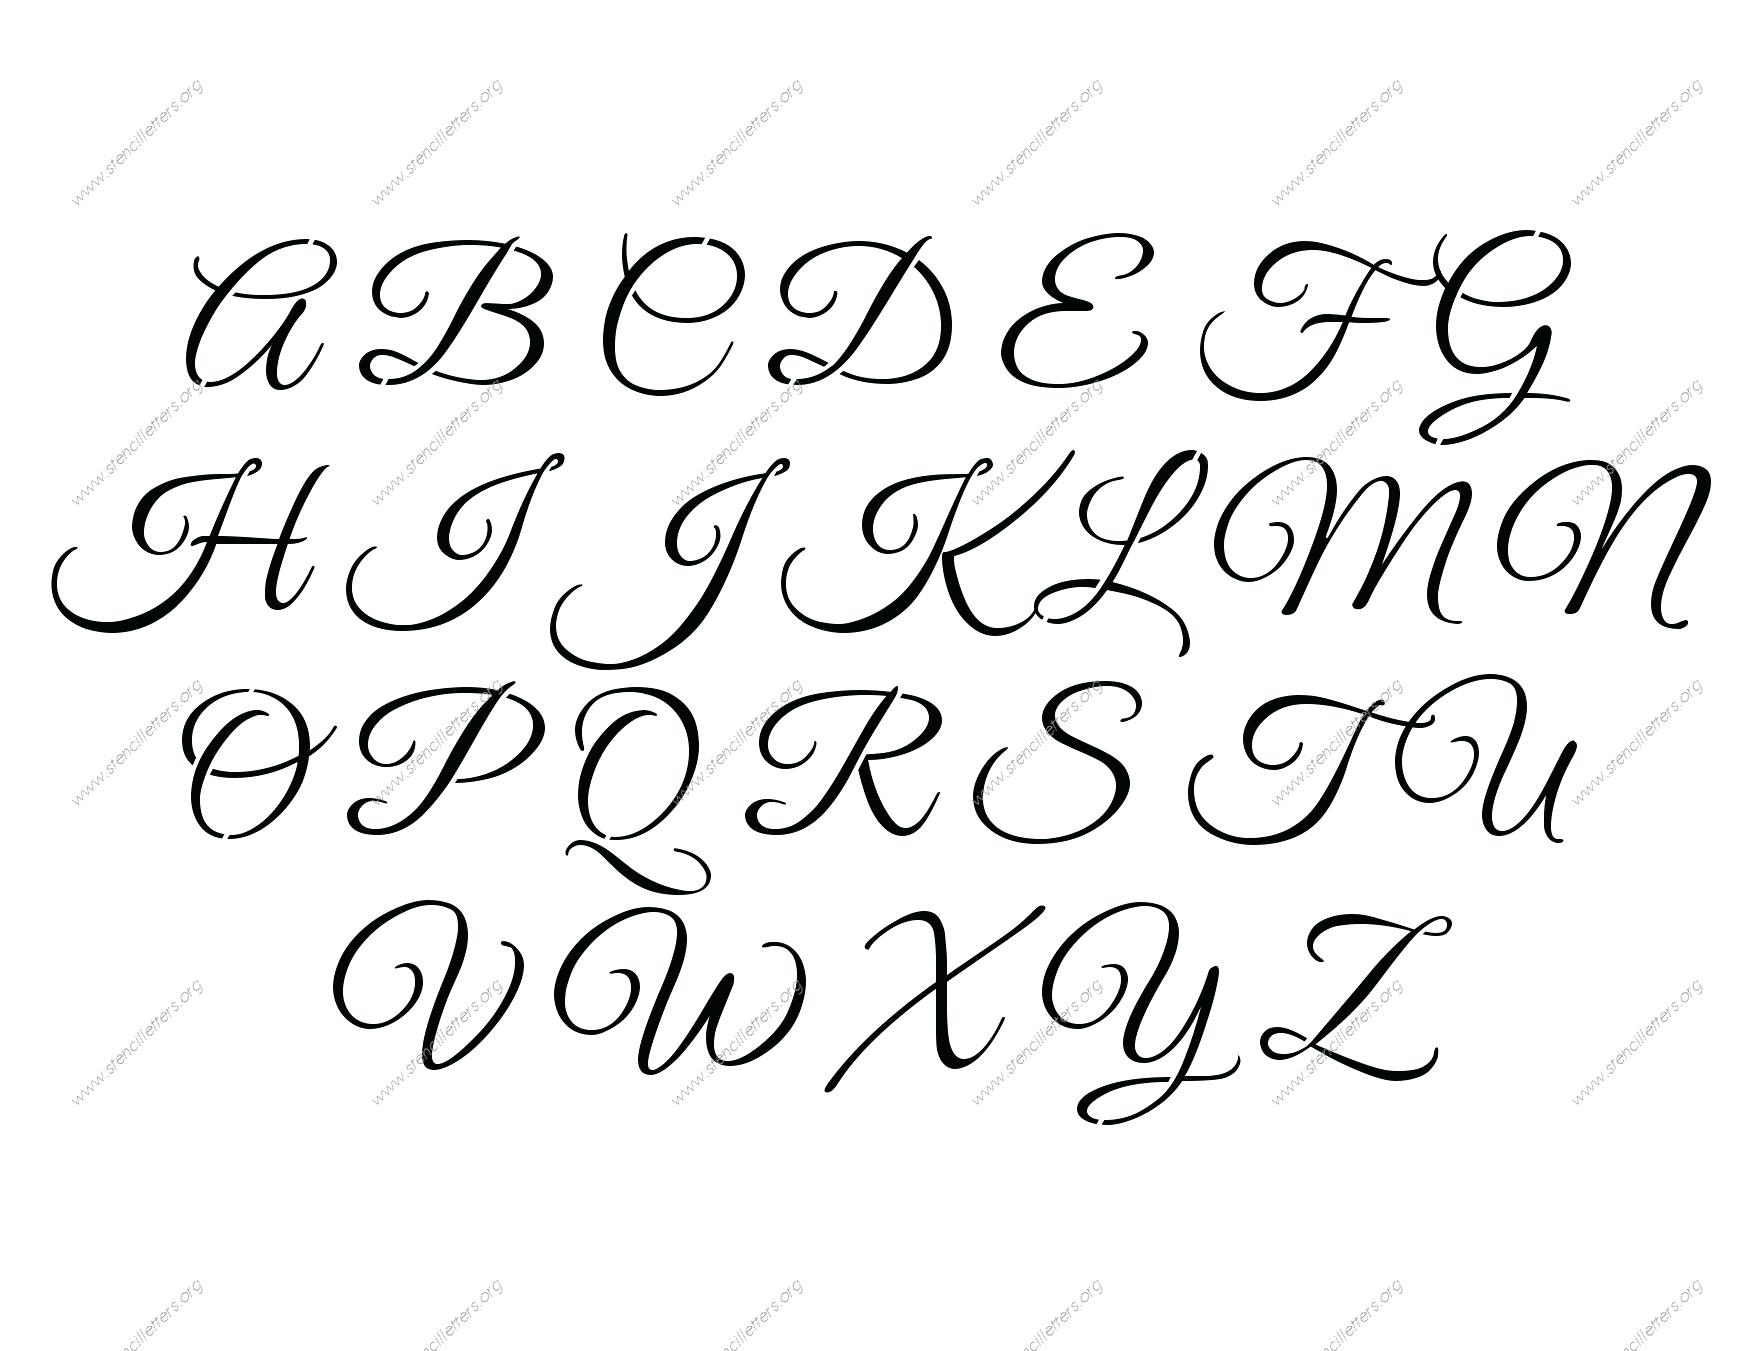 fancy lettering font generator